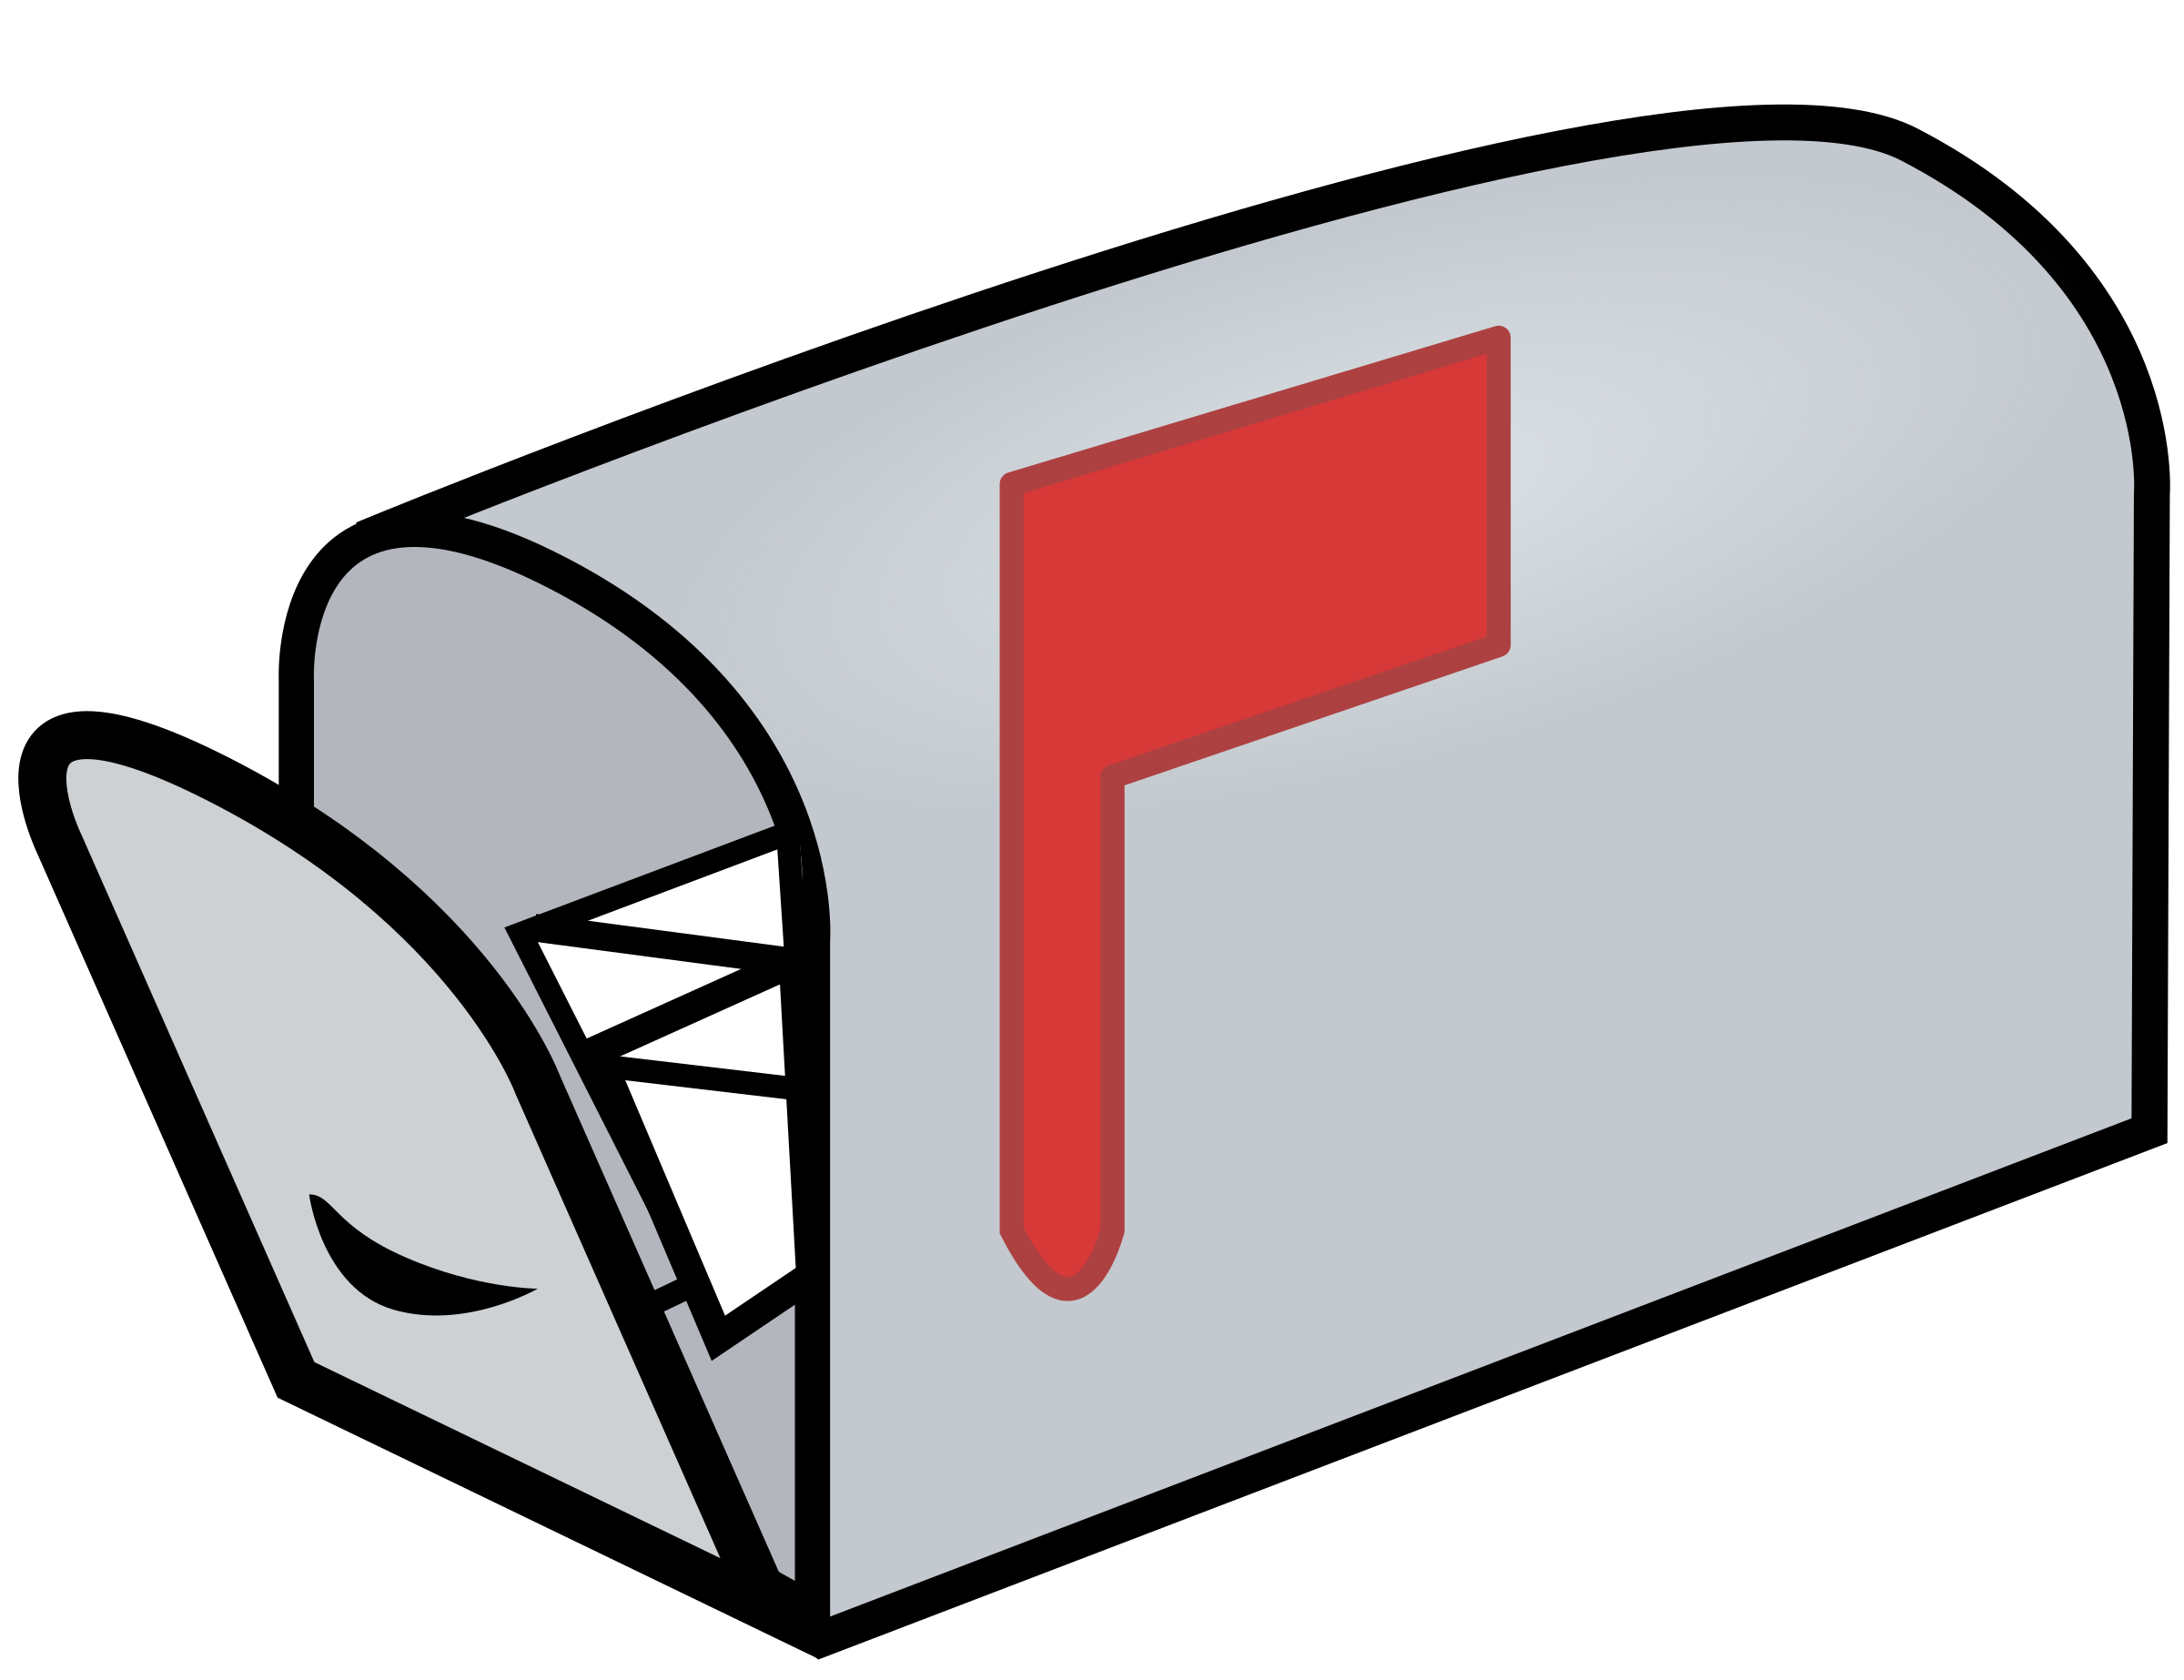 mailbox clipart love